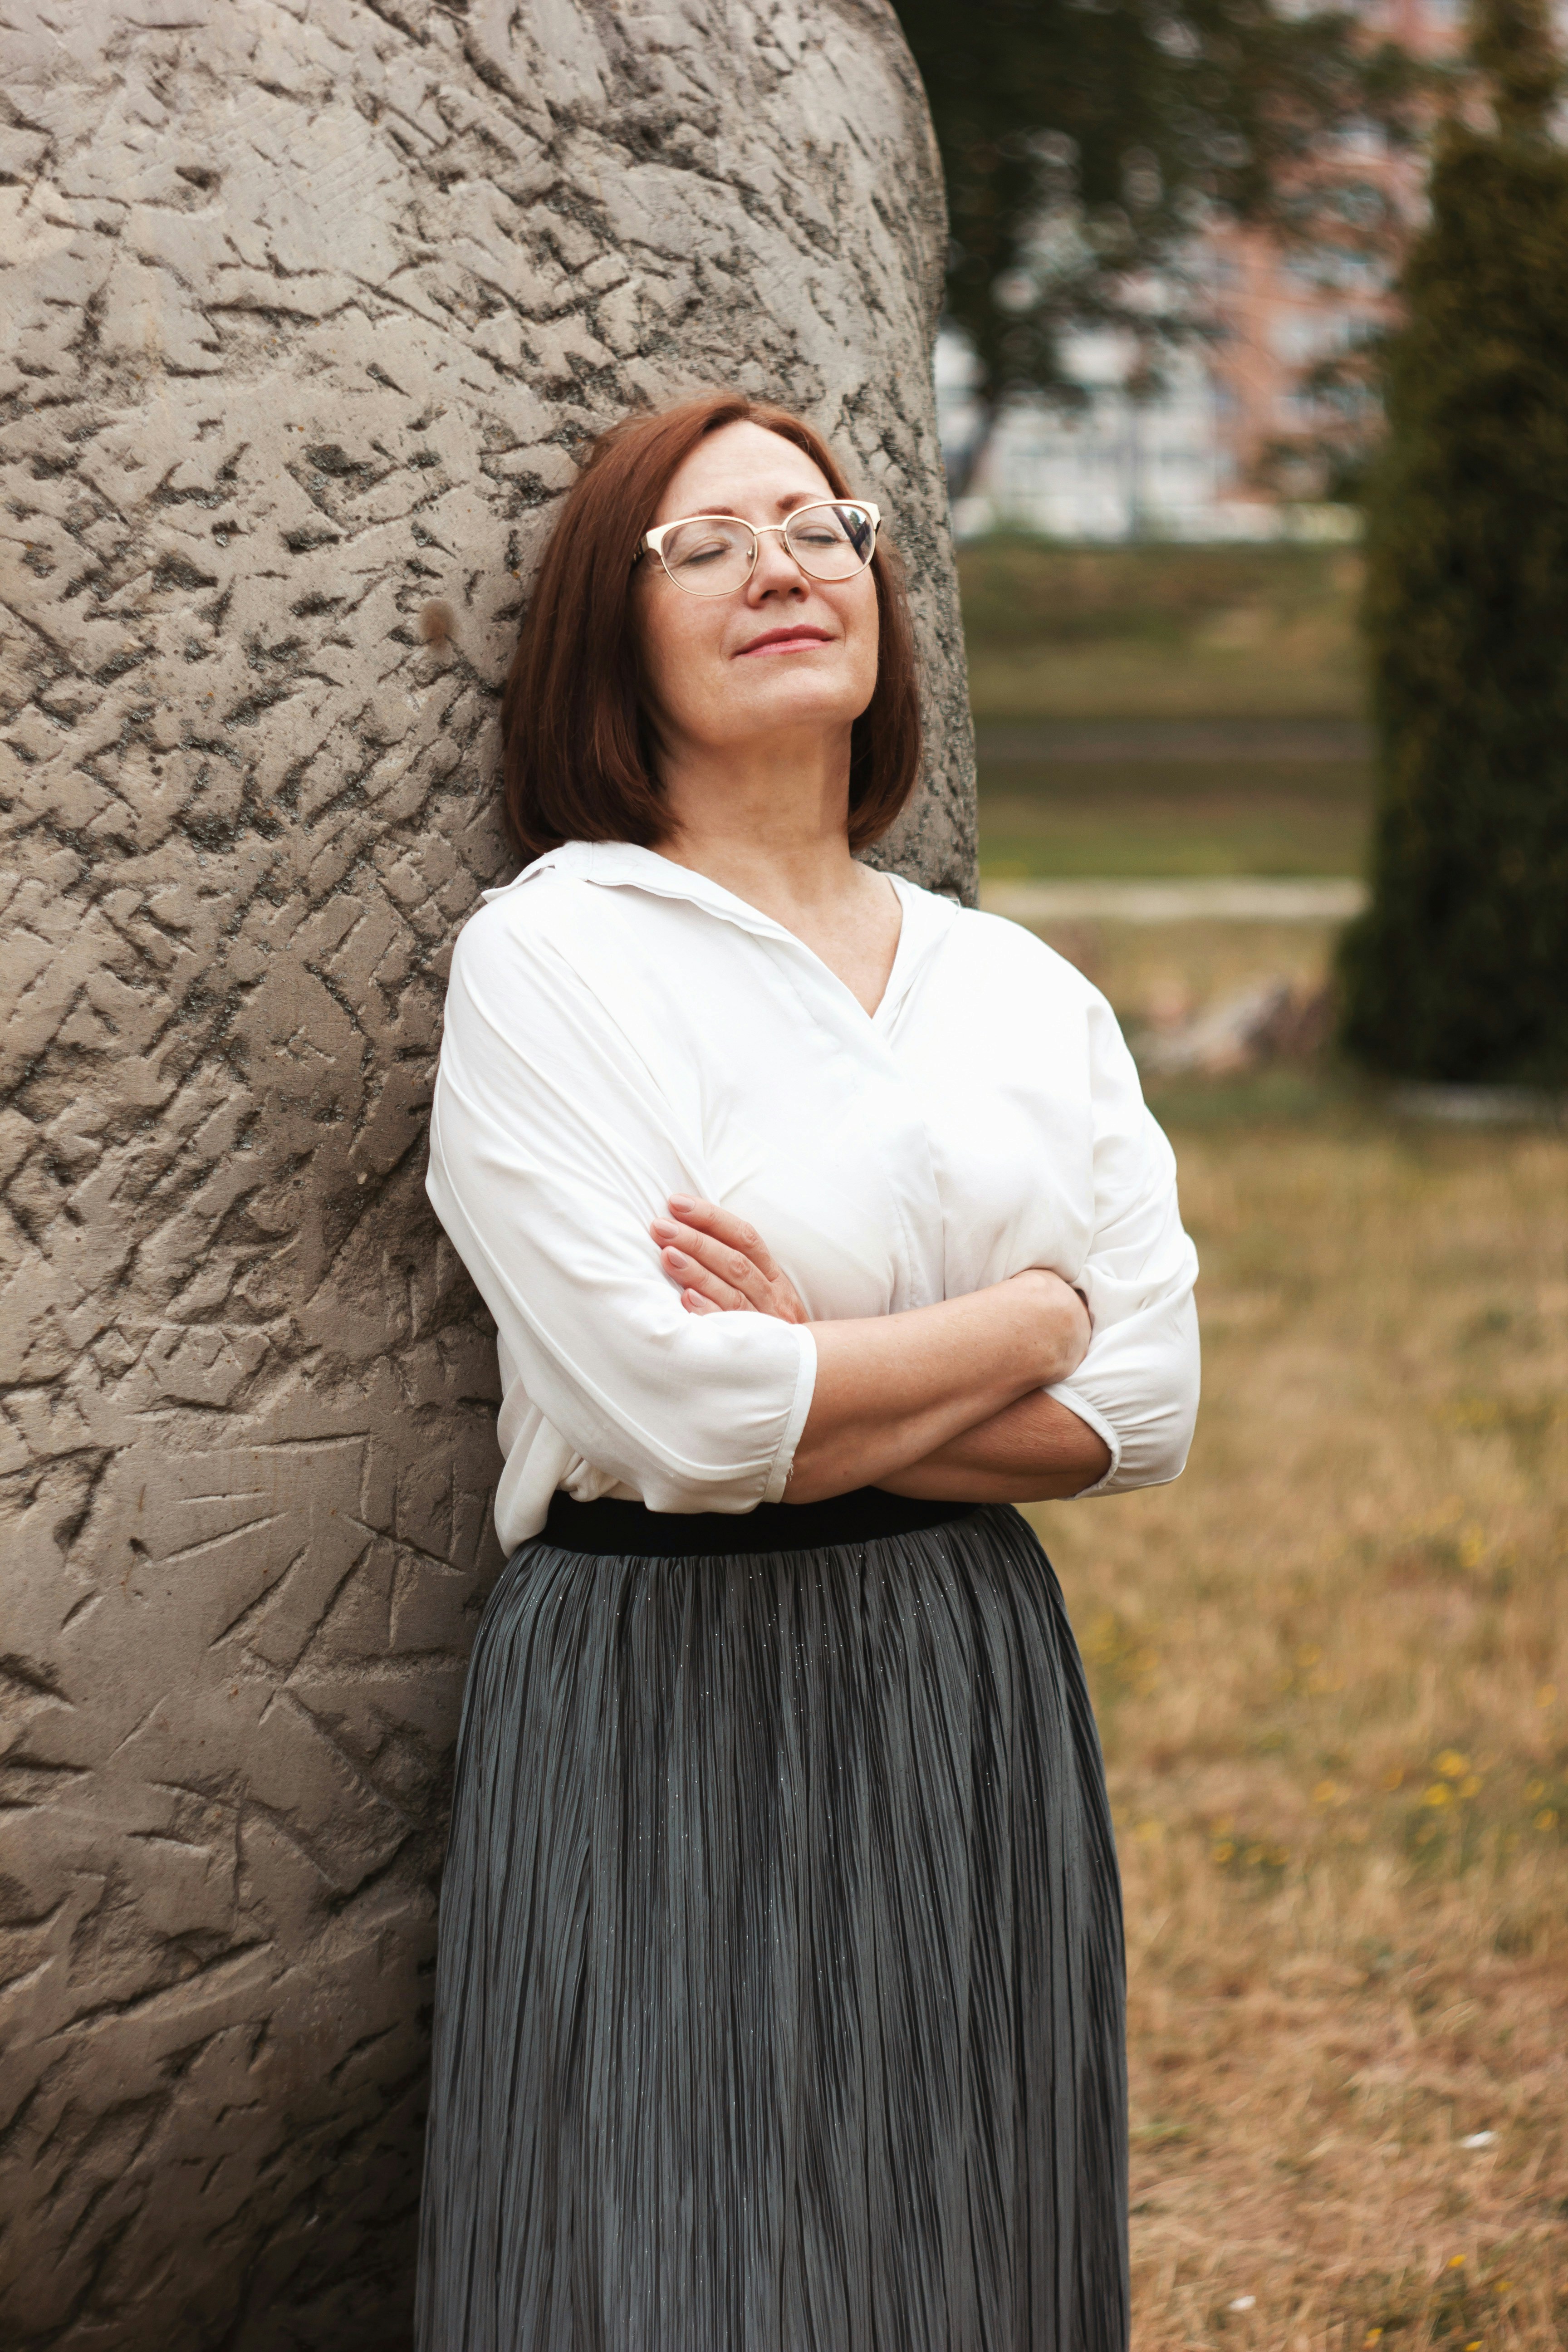 Une femme s'appuyant sur le monument tout en souriant | Source : Unsplash